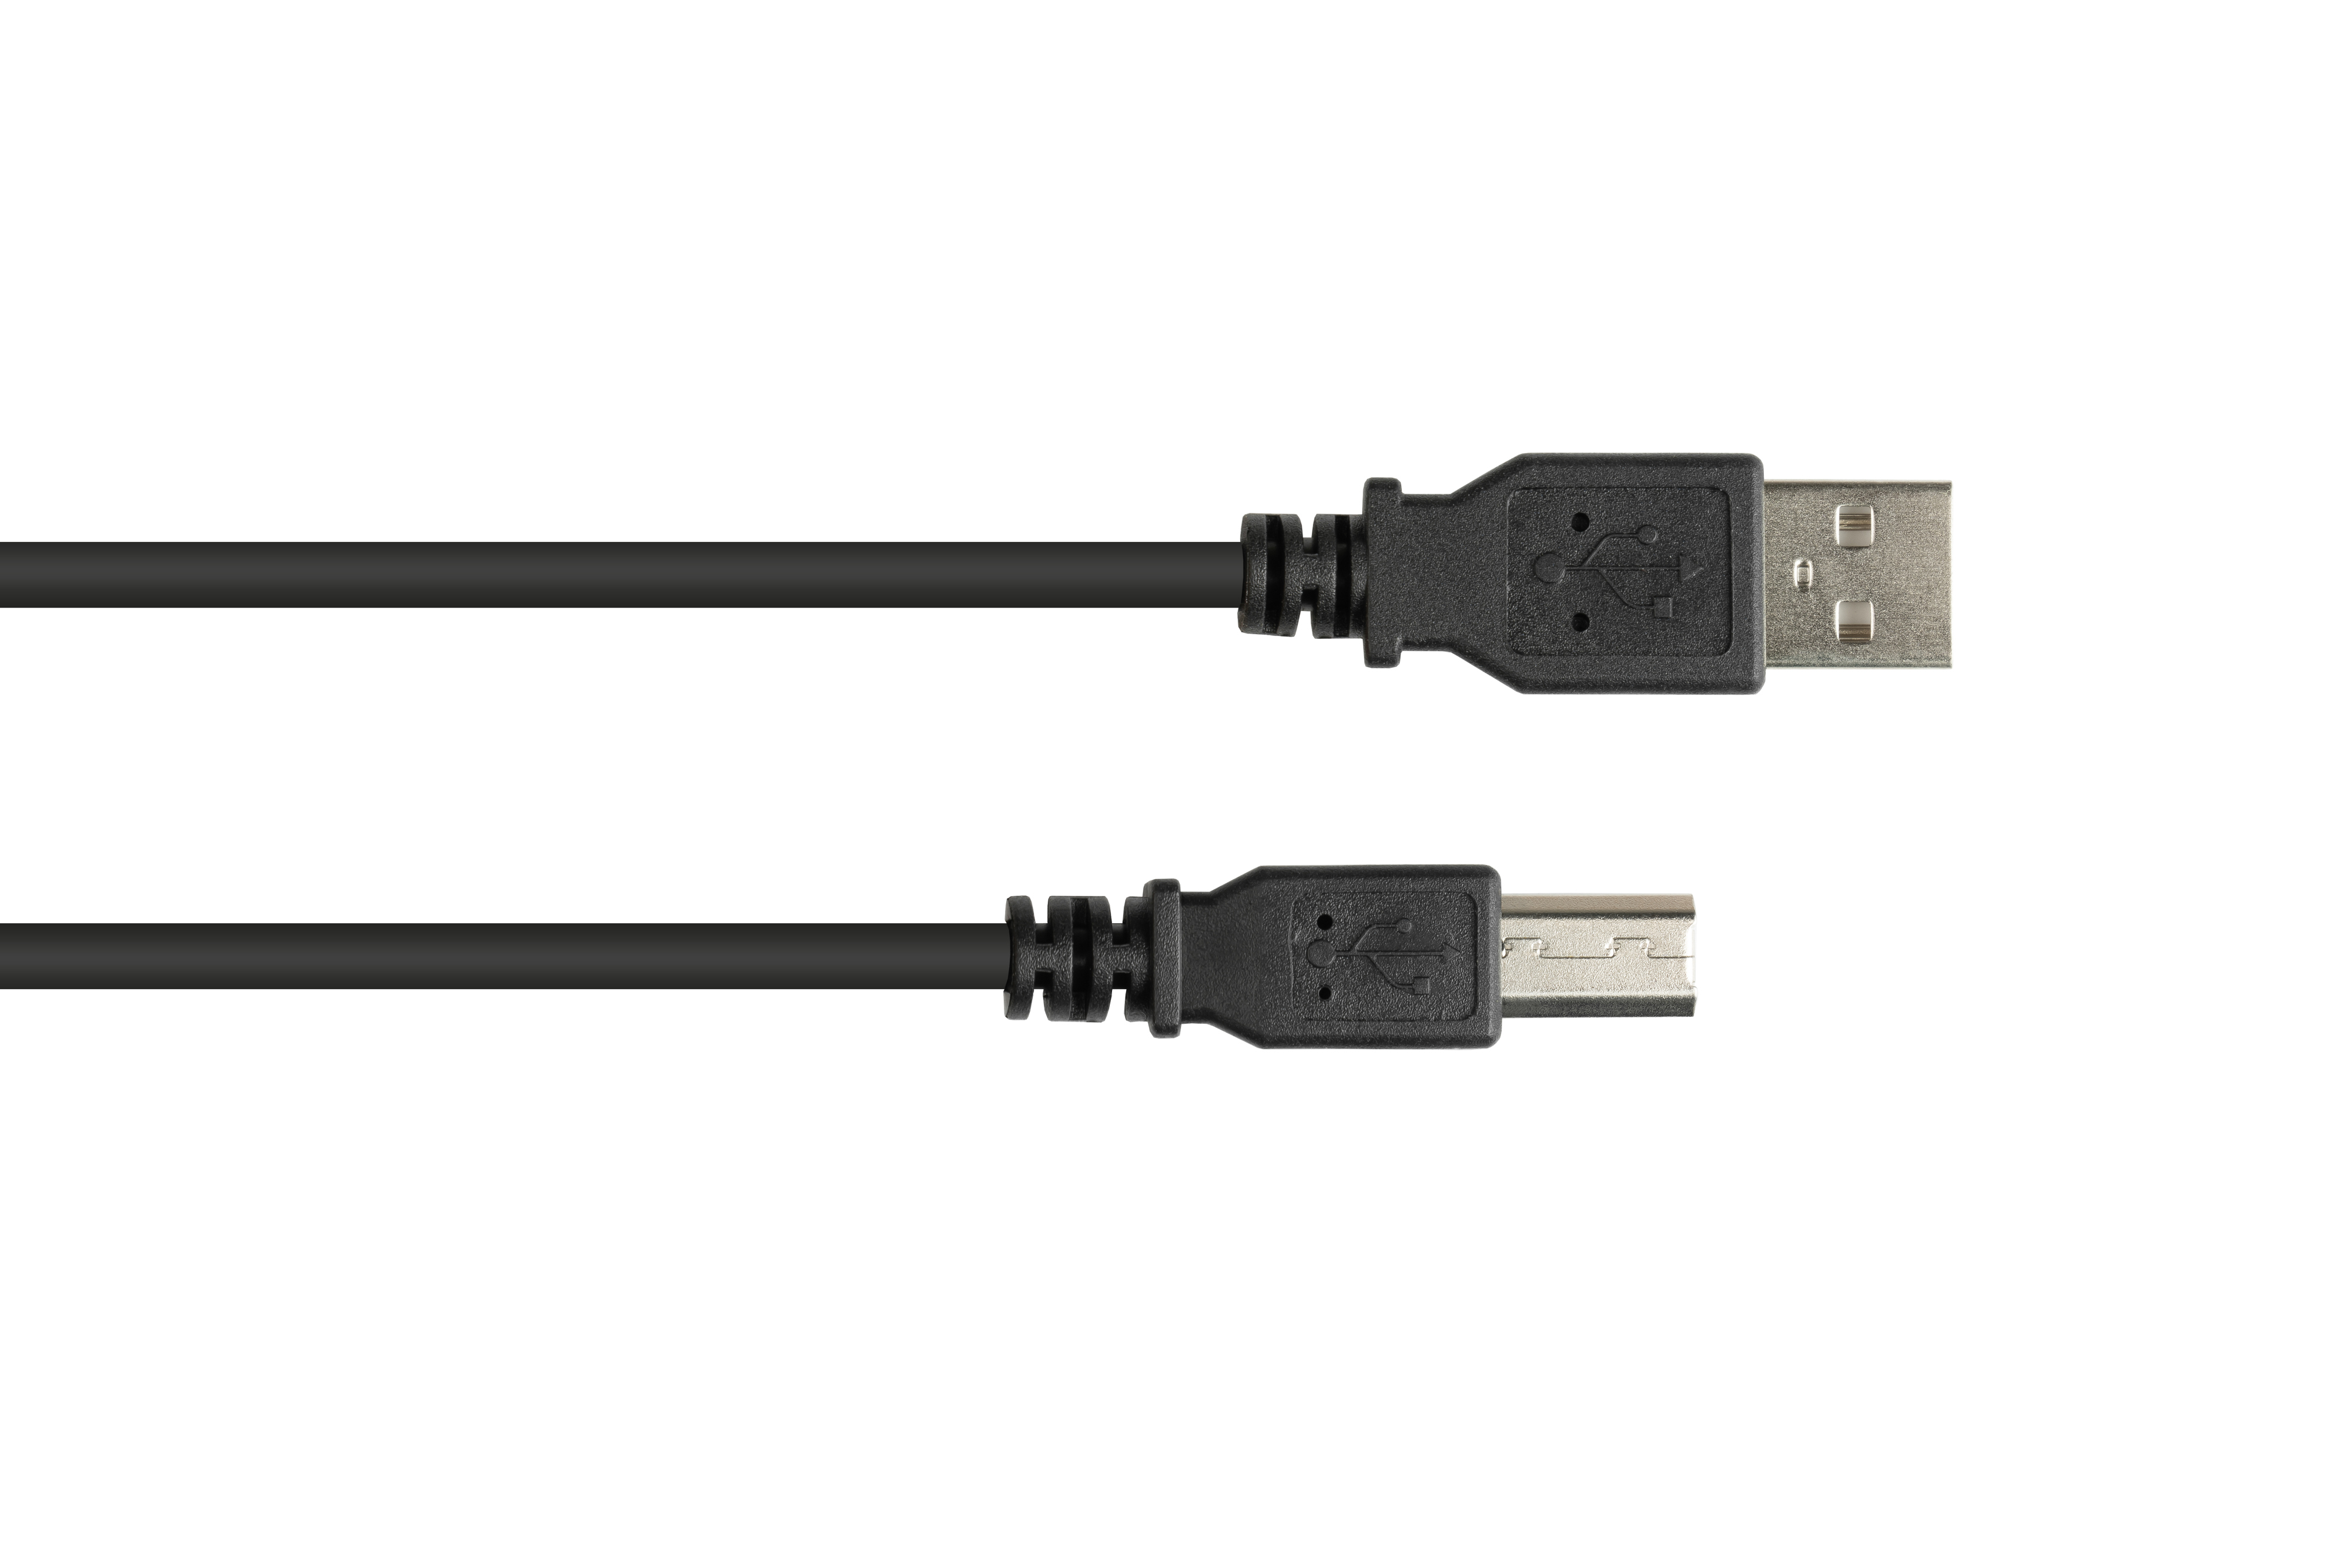 GOOD CONNECTIONS USB 2.0 an Stecker B, schwarz A EASY Stecker Anschlusskabel